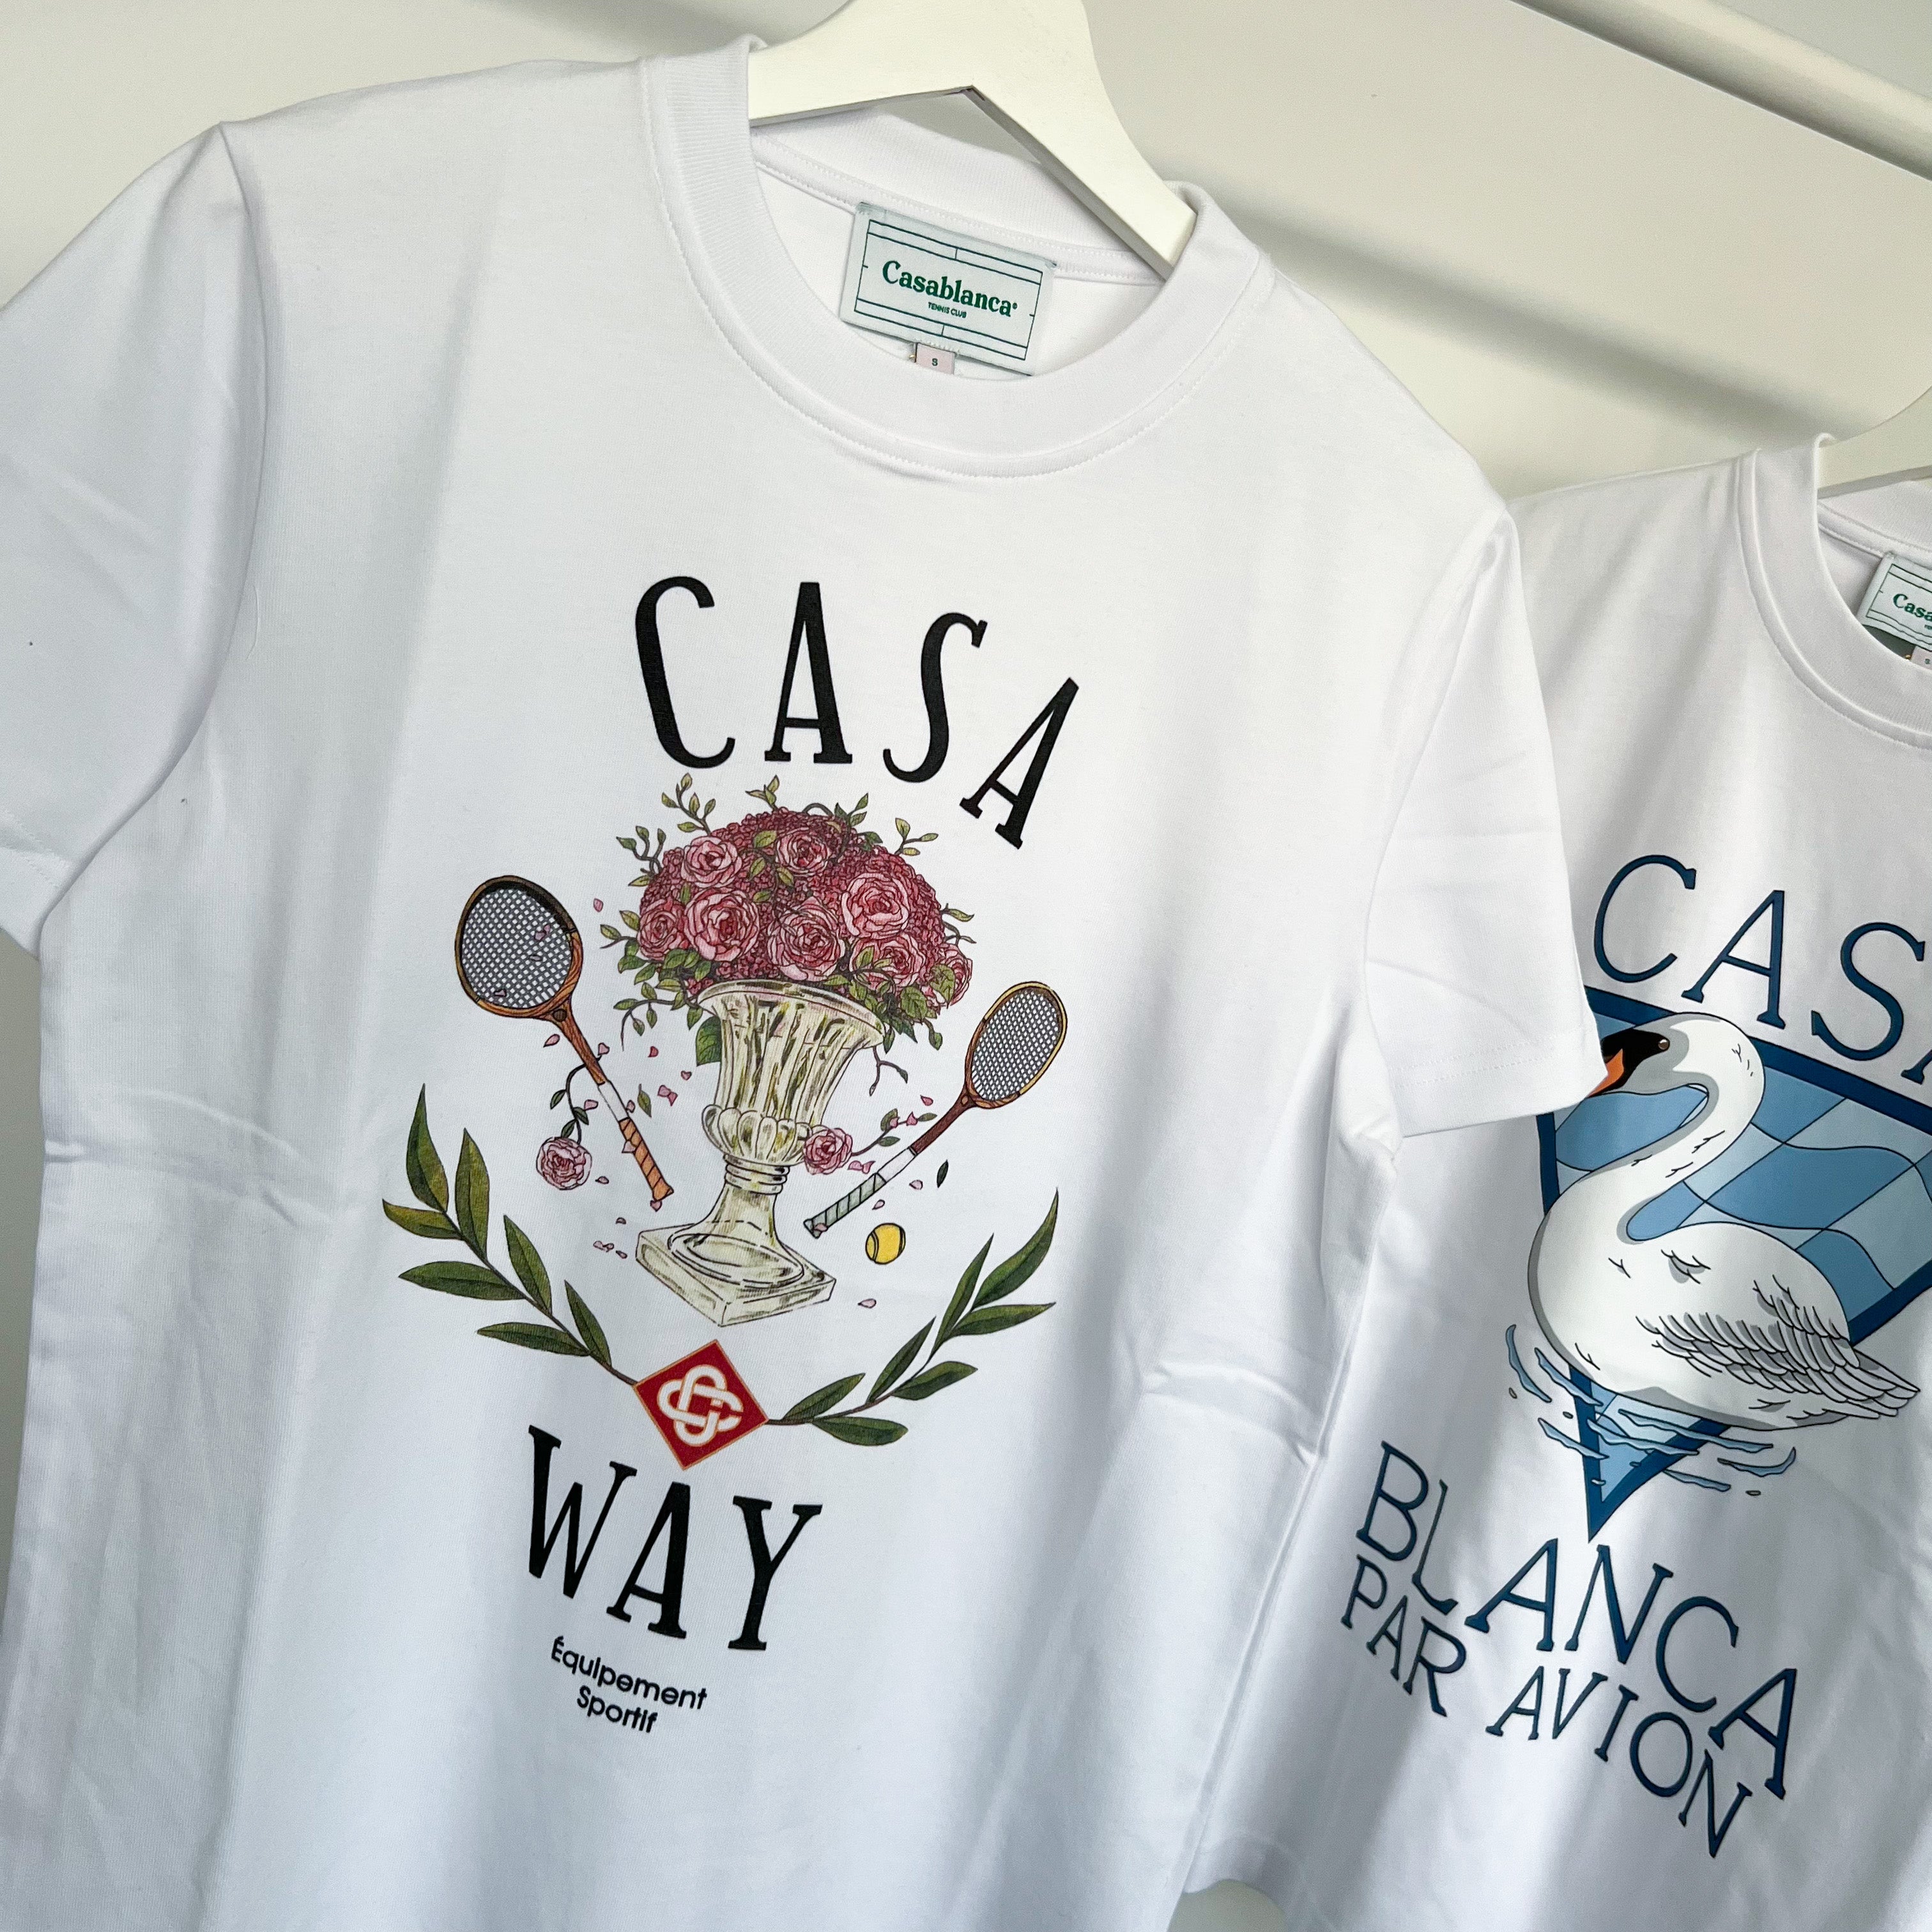 Casablanca Casa Way Tennis Tee